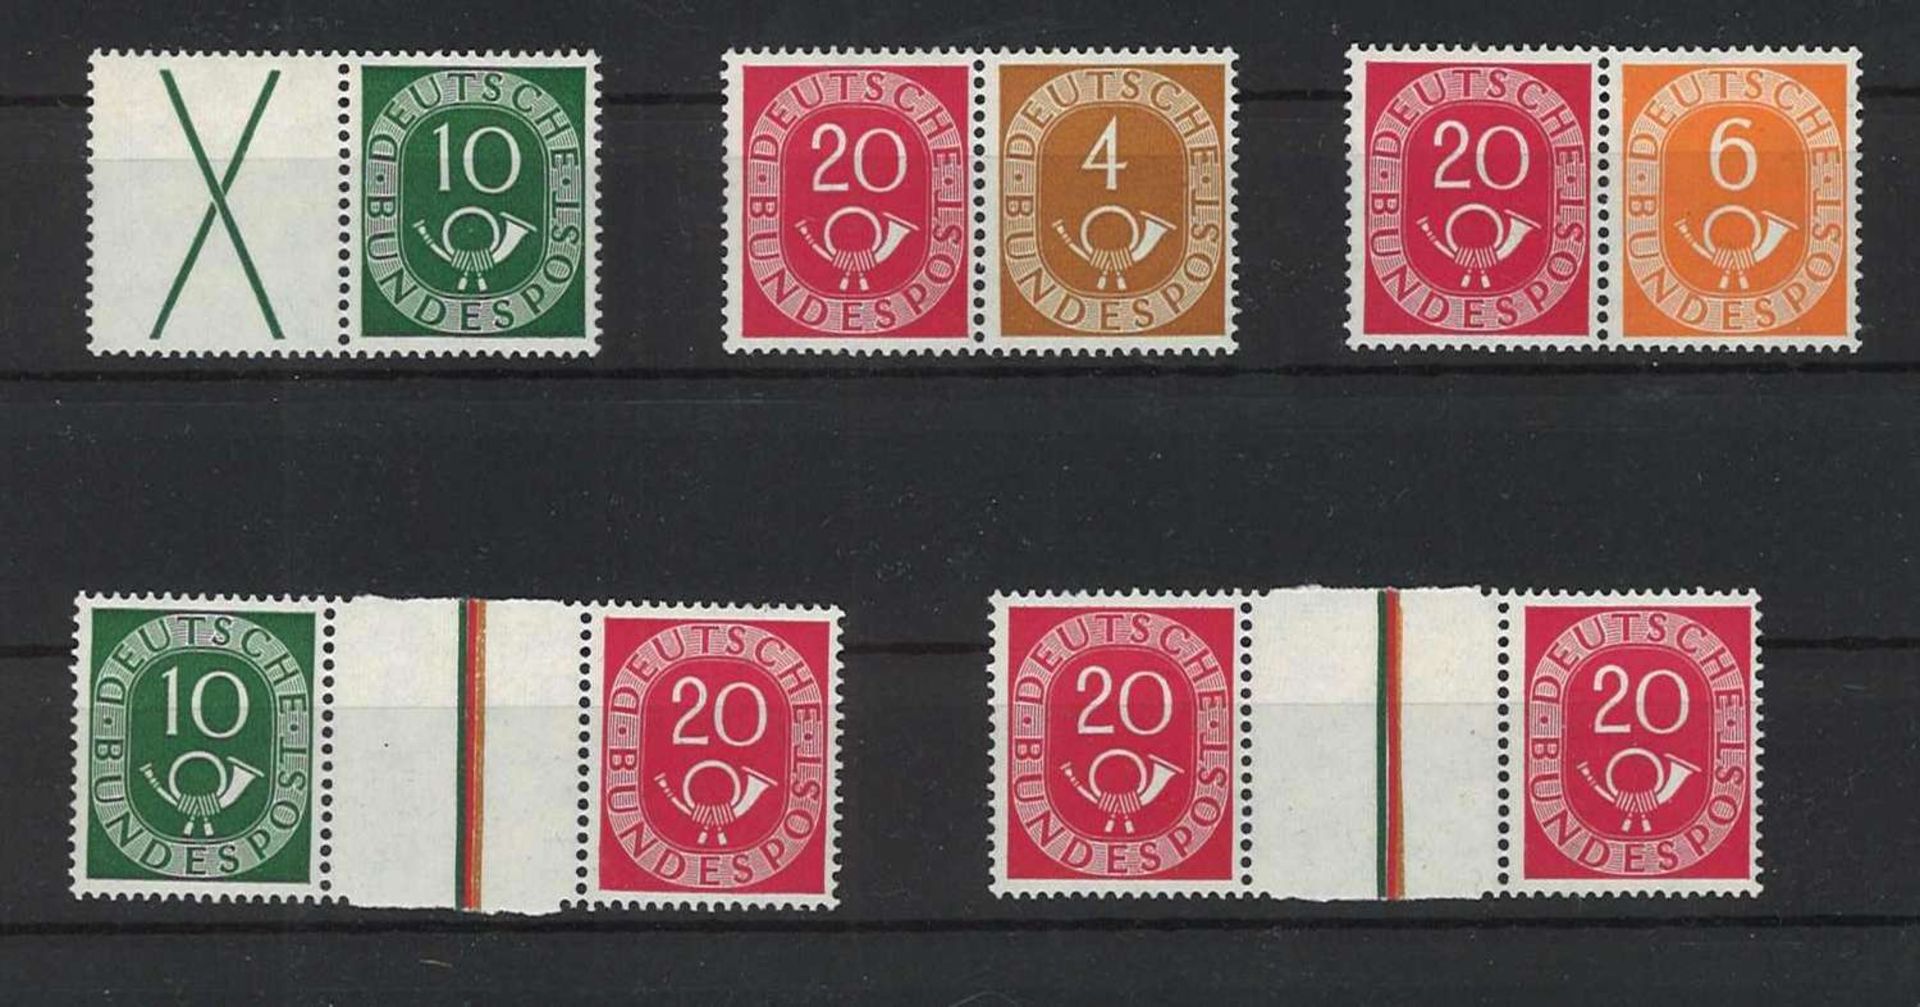 BRD 1951, MiNr. W1-3, WZ 1-2FRG 1951, MiNr. W1-3, WZ 1-2